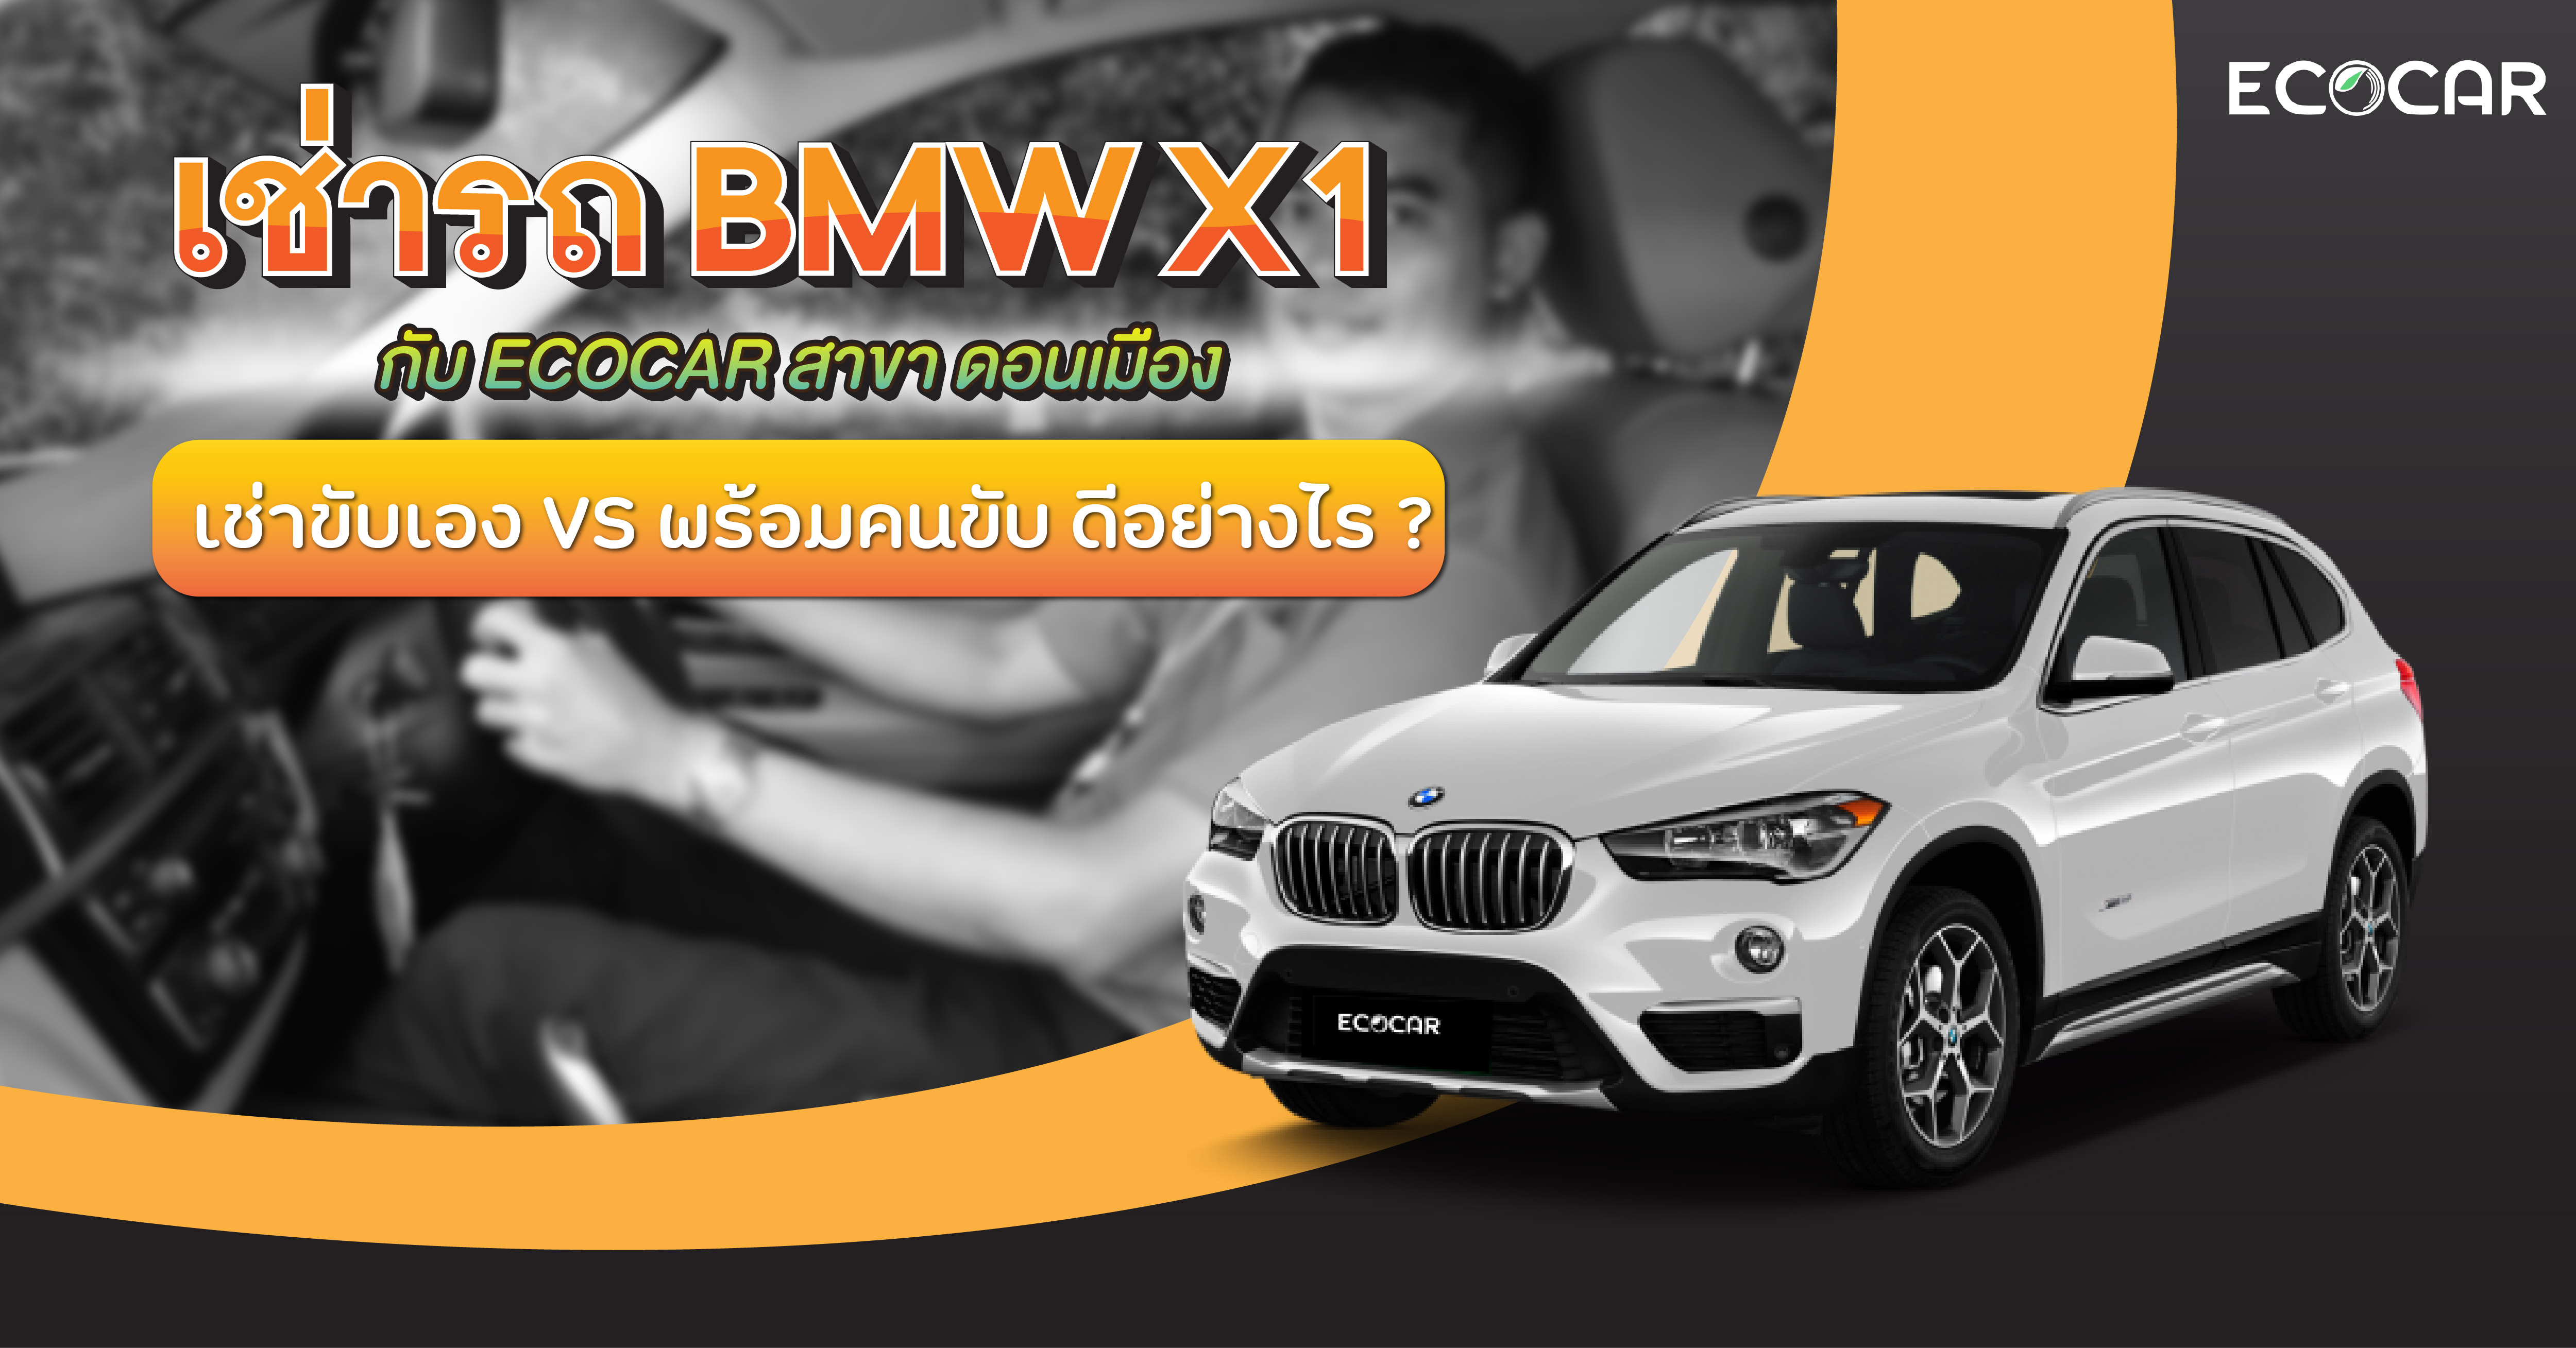 เช่ารถ BMWX1 กับ [ ECOCAR สาขาดอนเมือง ] เช่าขับเองและพร้อมคนขับ ดีอย่างไร ?